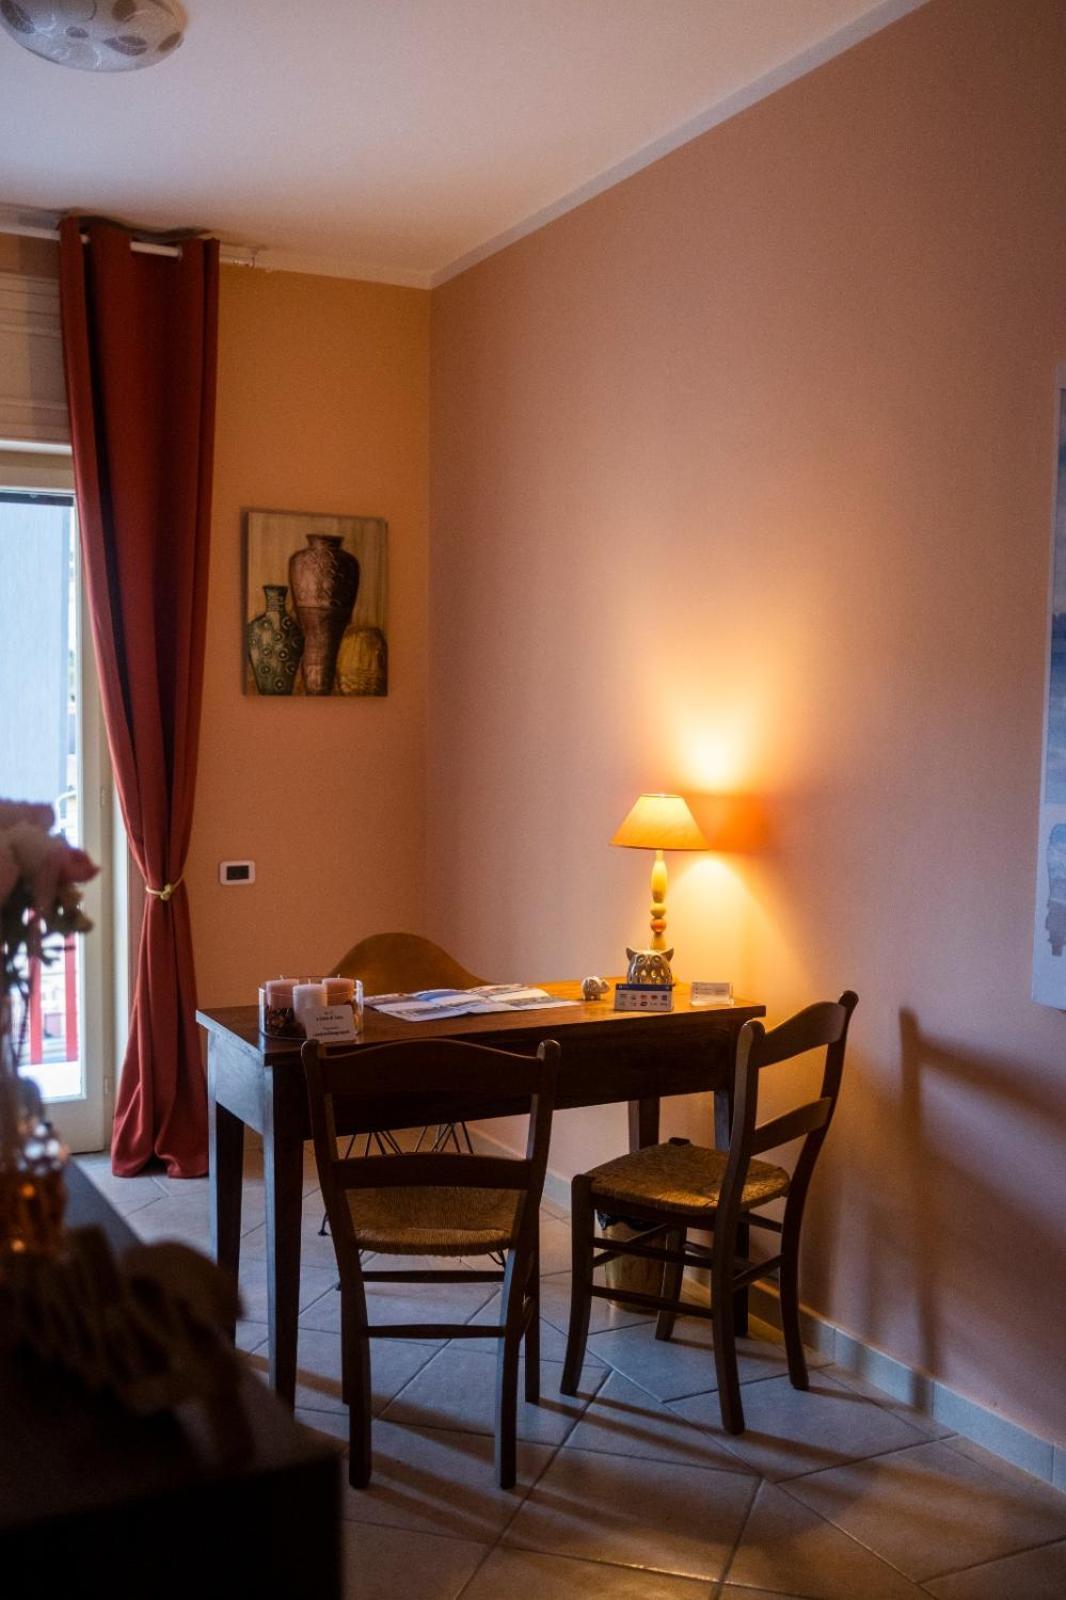 A Casa Di Cecy Bed & Breakfast Agropoli Luaran gambar